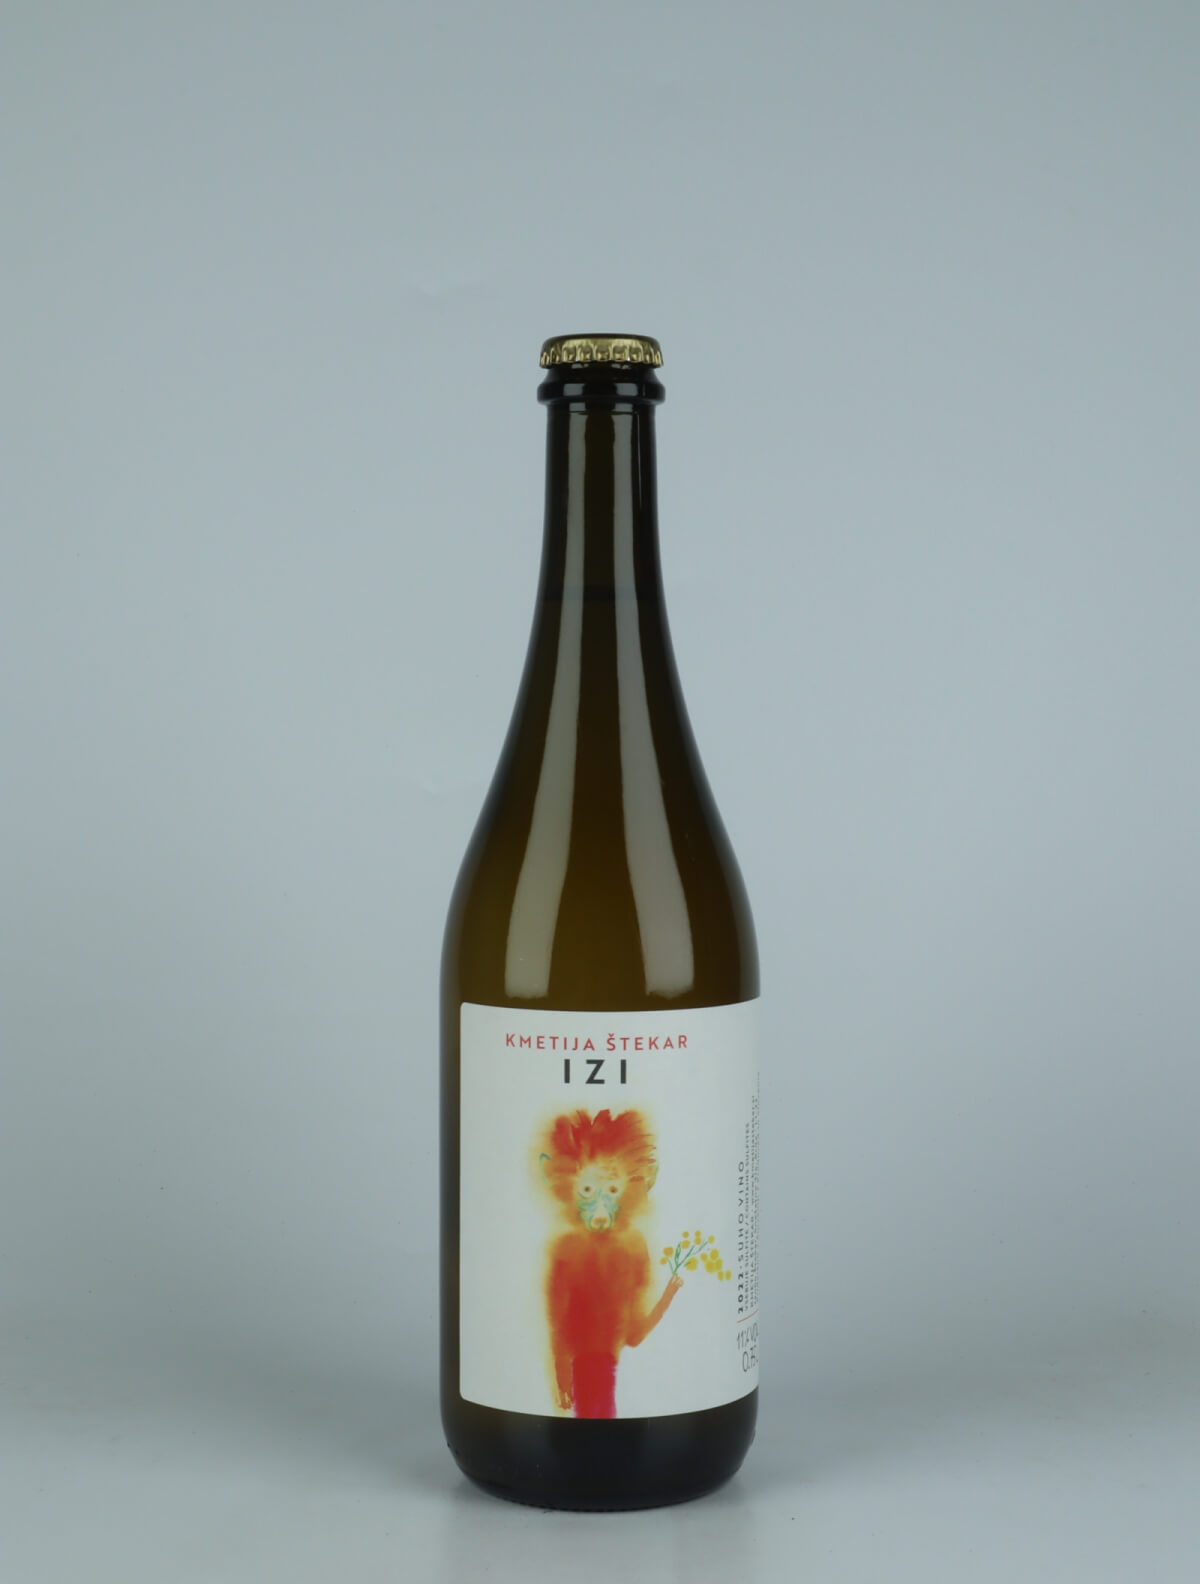 A bottle 2022 Izi Sparkling from Kmetija Stekar, Brda in Slovenia